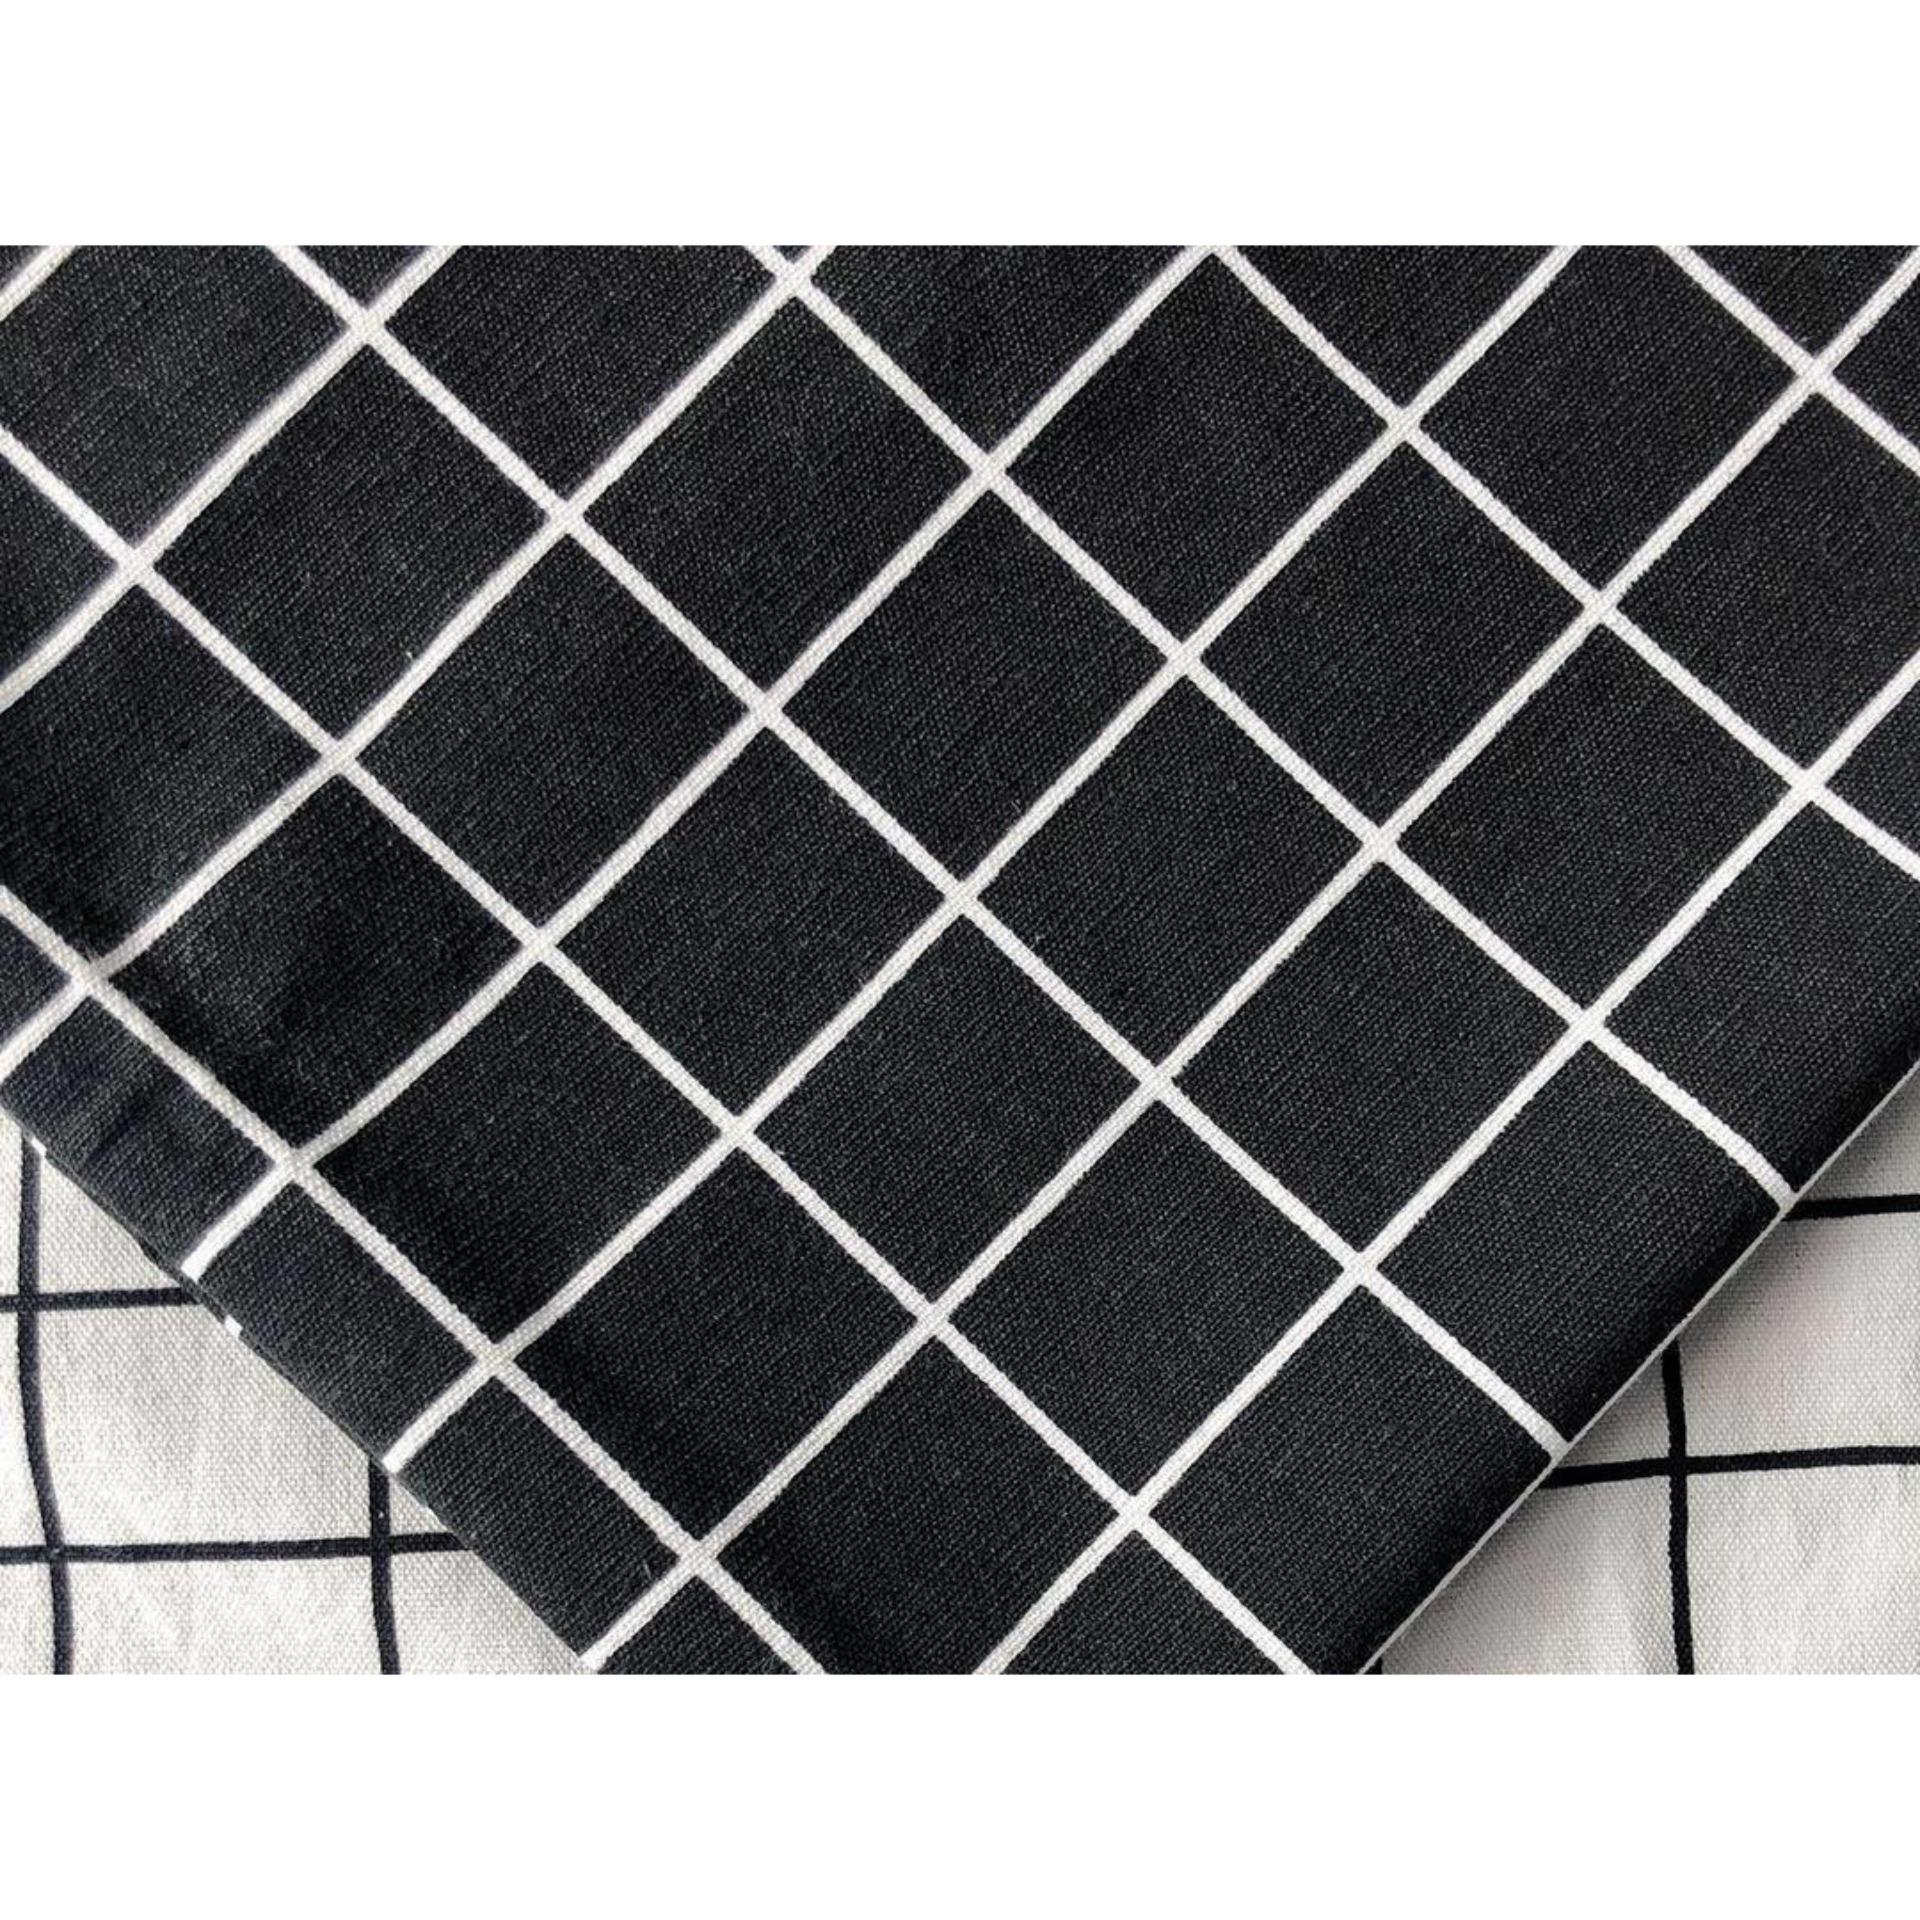 Vải caro đen sọc trắng: Vải caro đen sọc trắng đang làm mưa làm gió trên thị trường thời trang hiện nay. Với sự kết hợp tinh tế giữa màu sắc và họa tiết, sản phẩm này sẽ mang đến cho bạn một phong cách thời trang độc đáo và hiện đại.